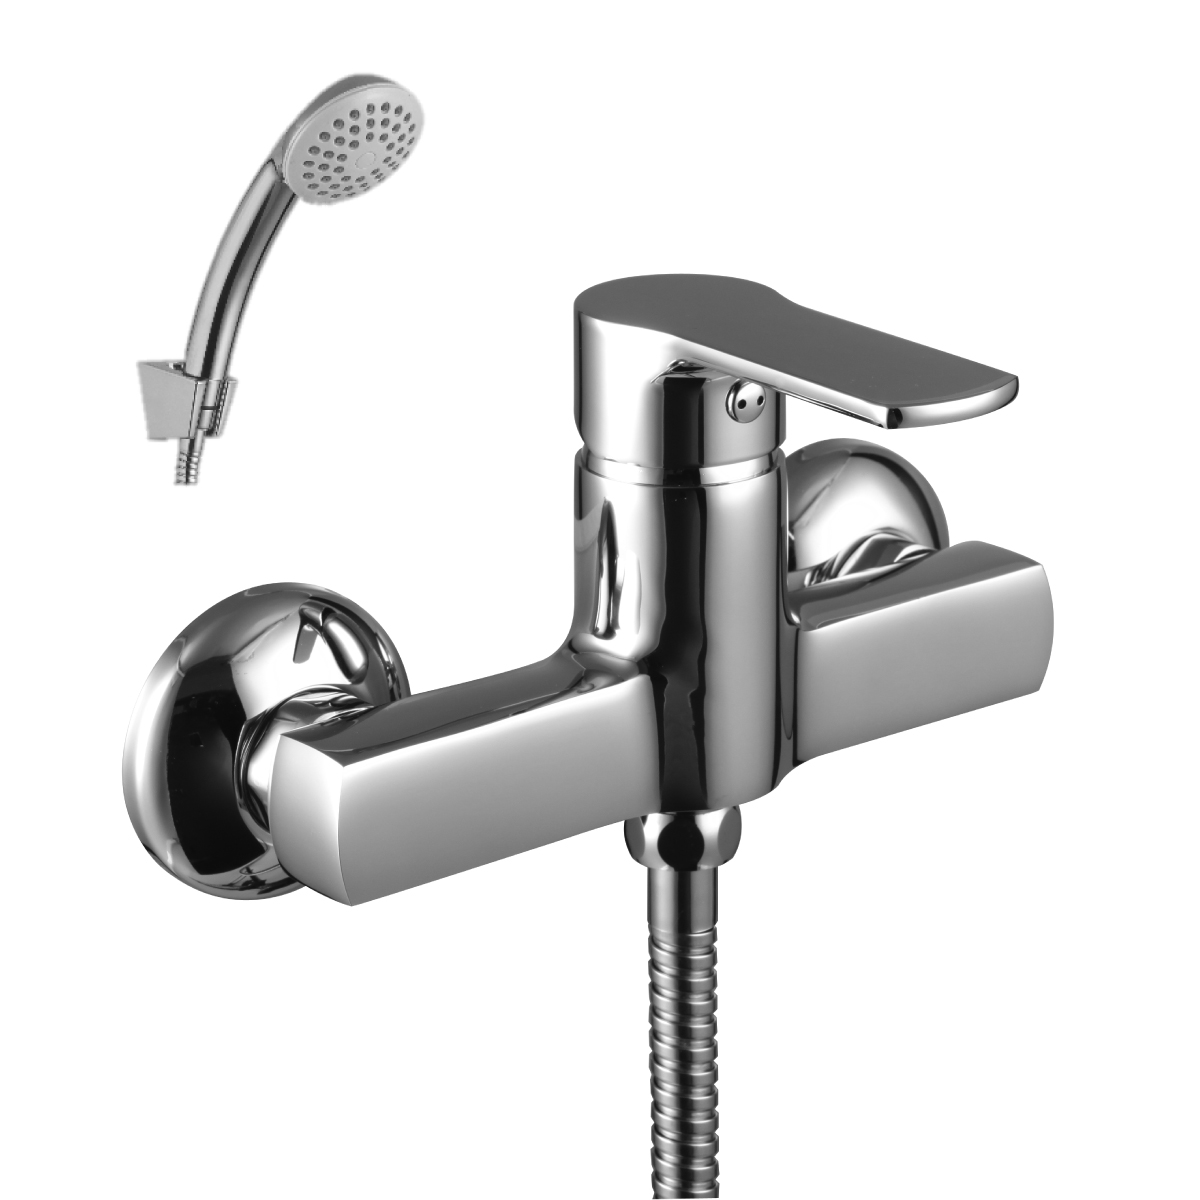 LM1503C Shower faucet